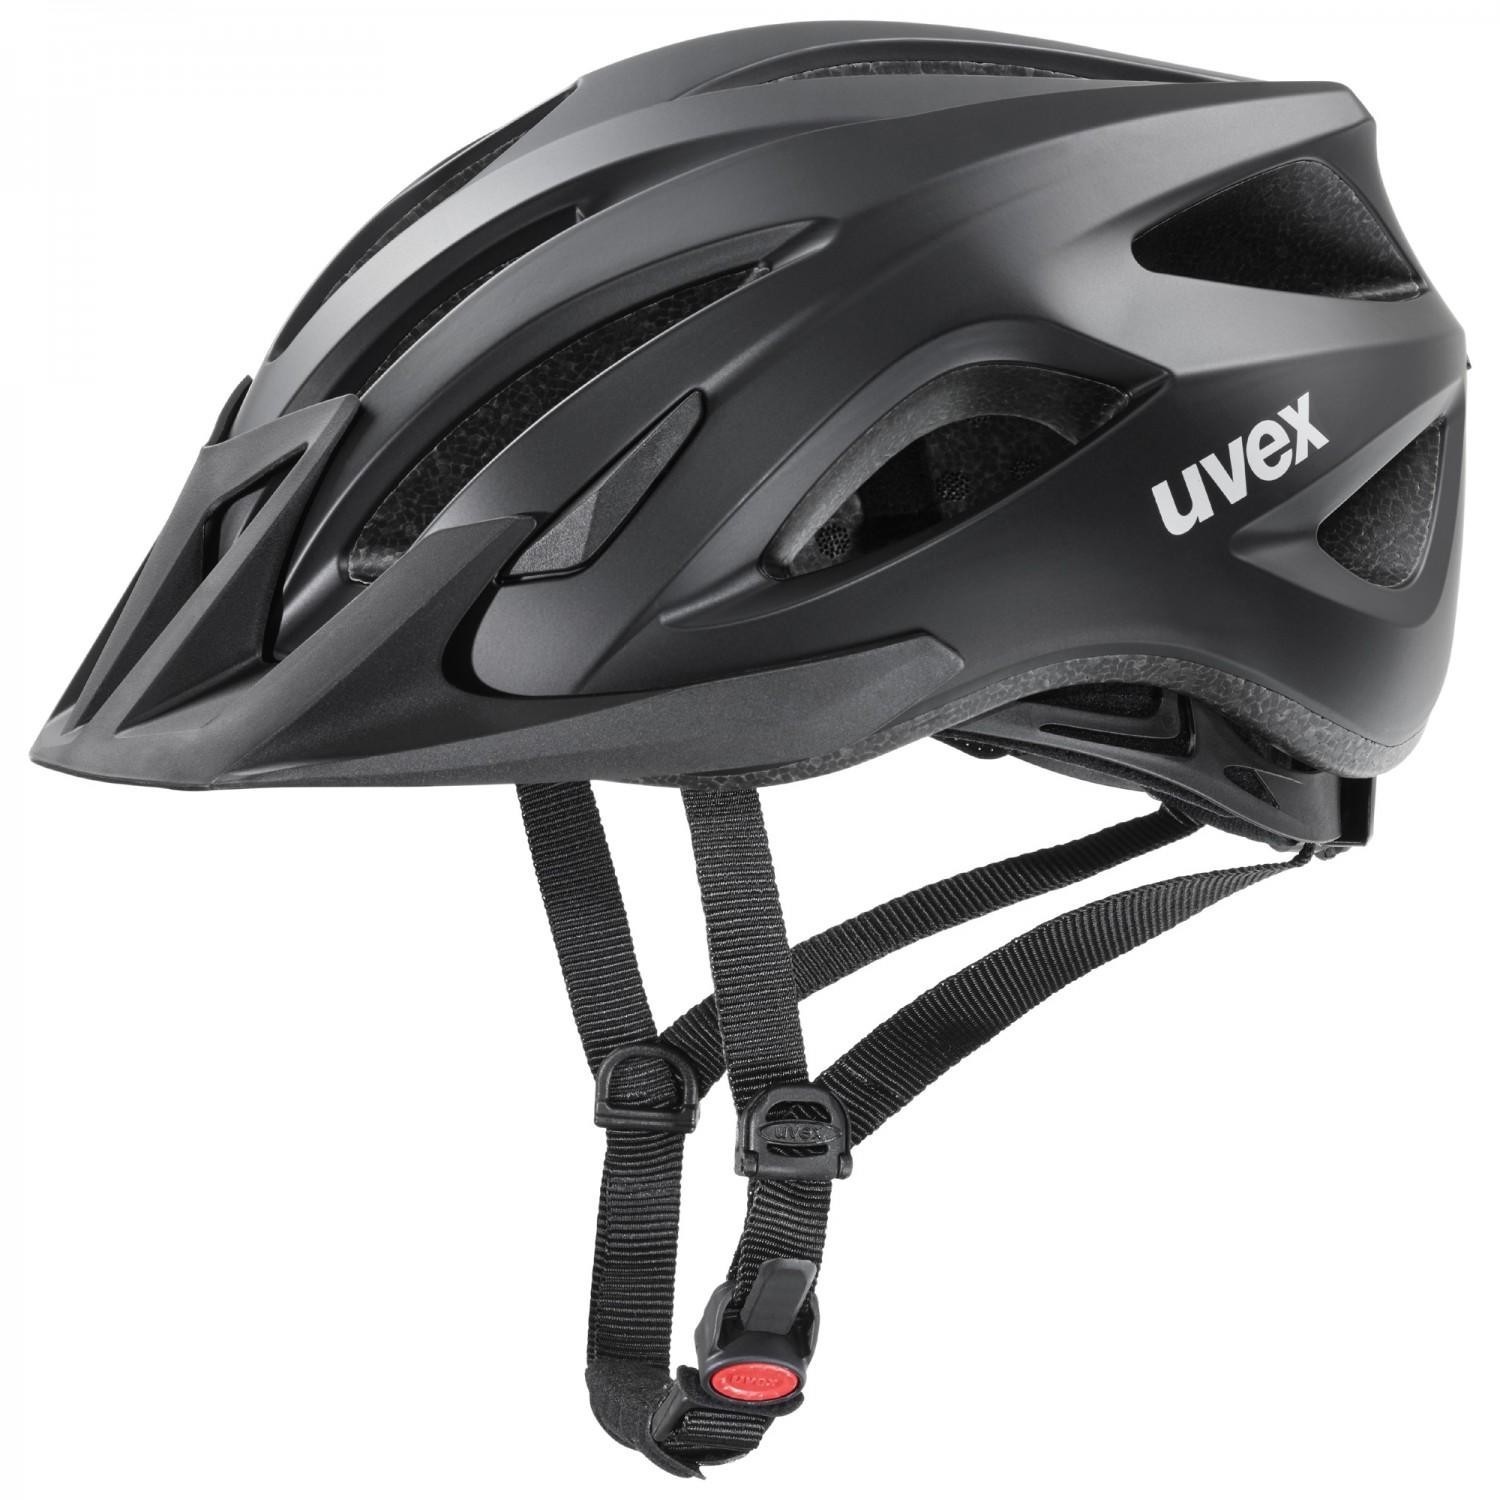 Photos - Bike Helmet UVEX Viva III  (black)